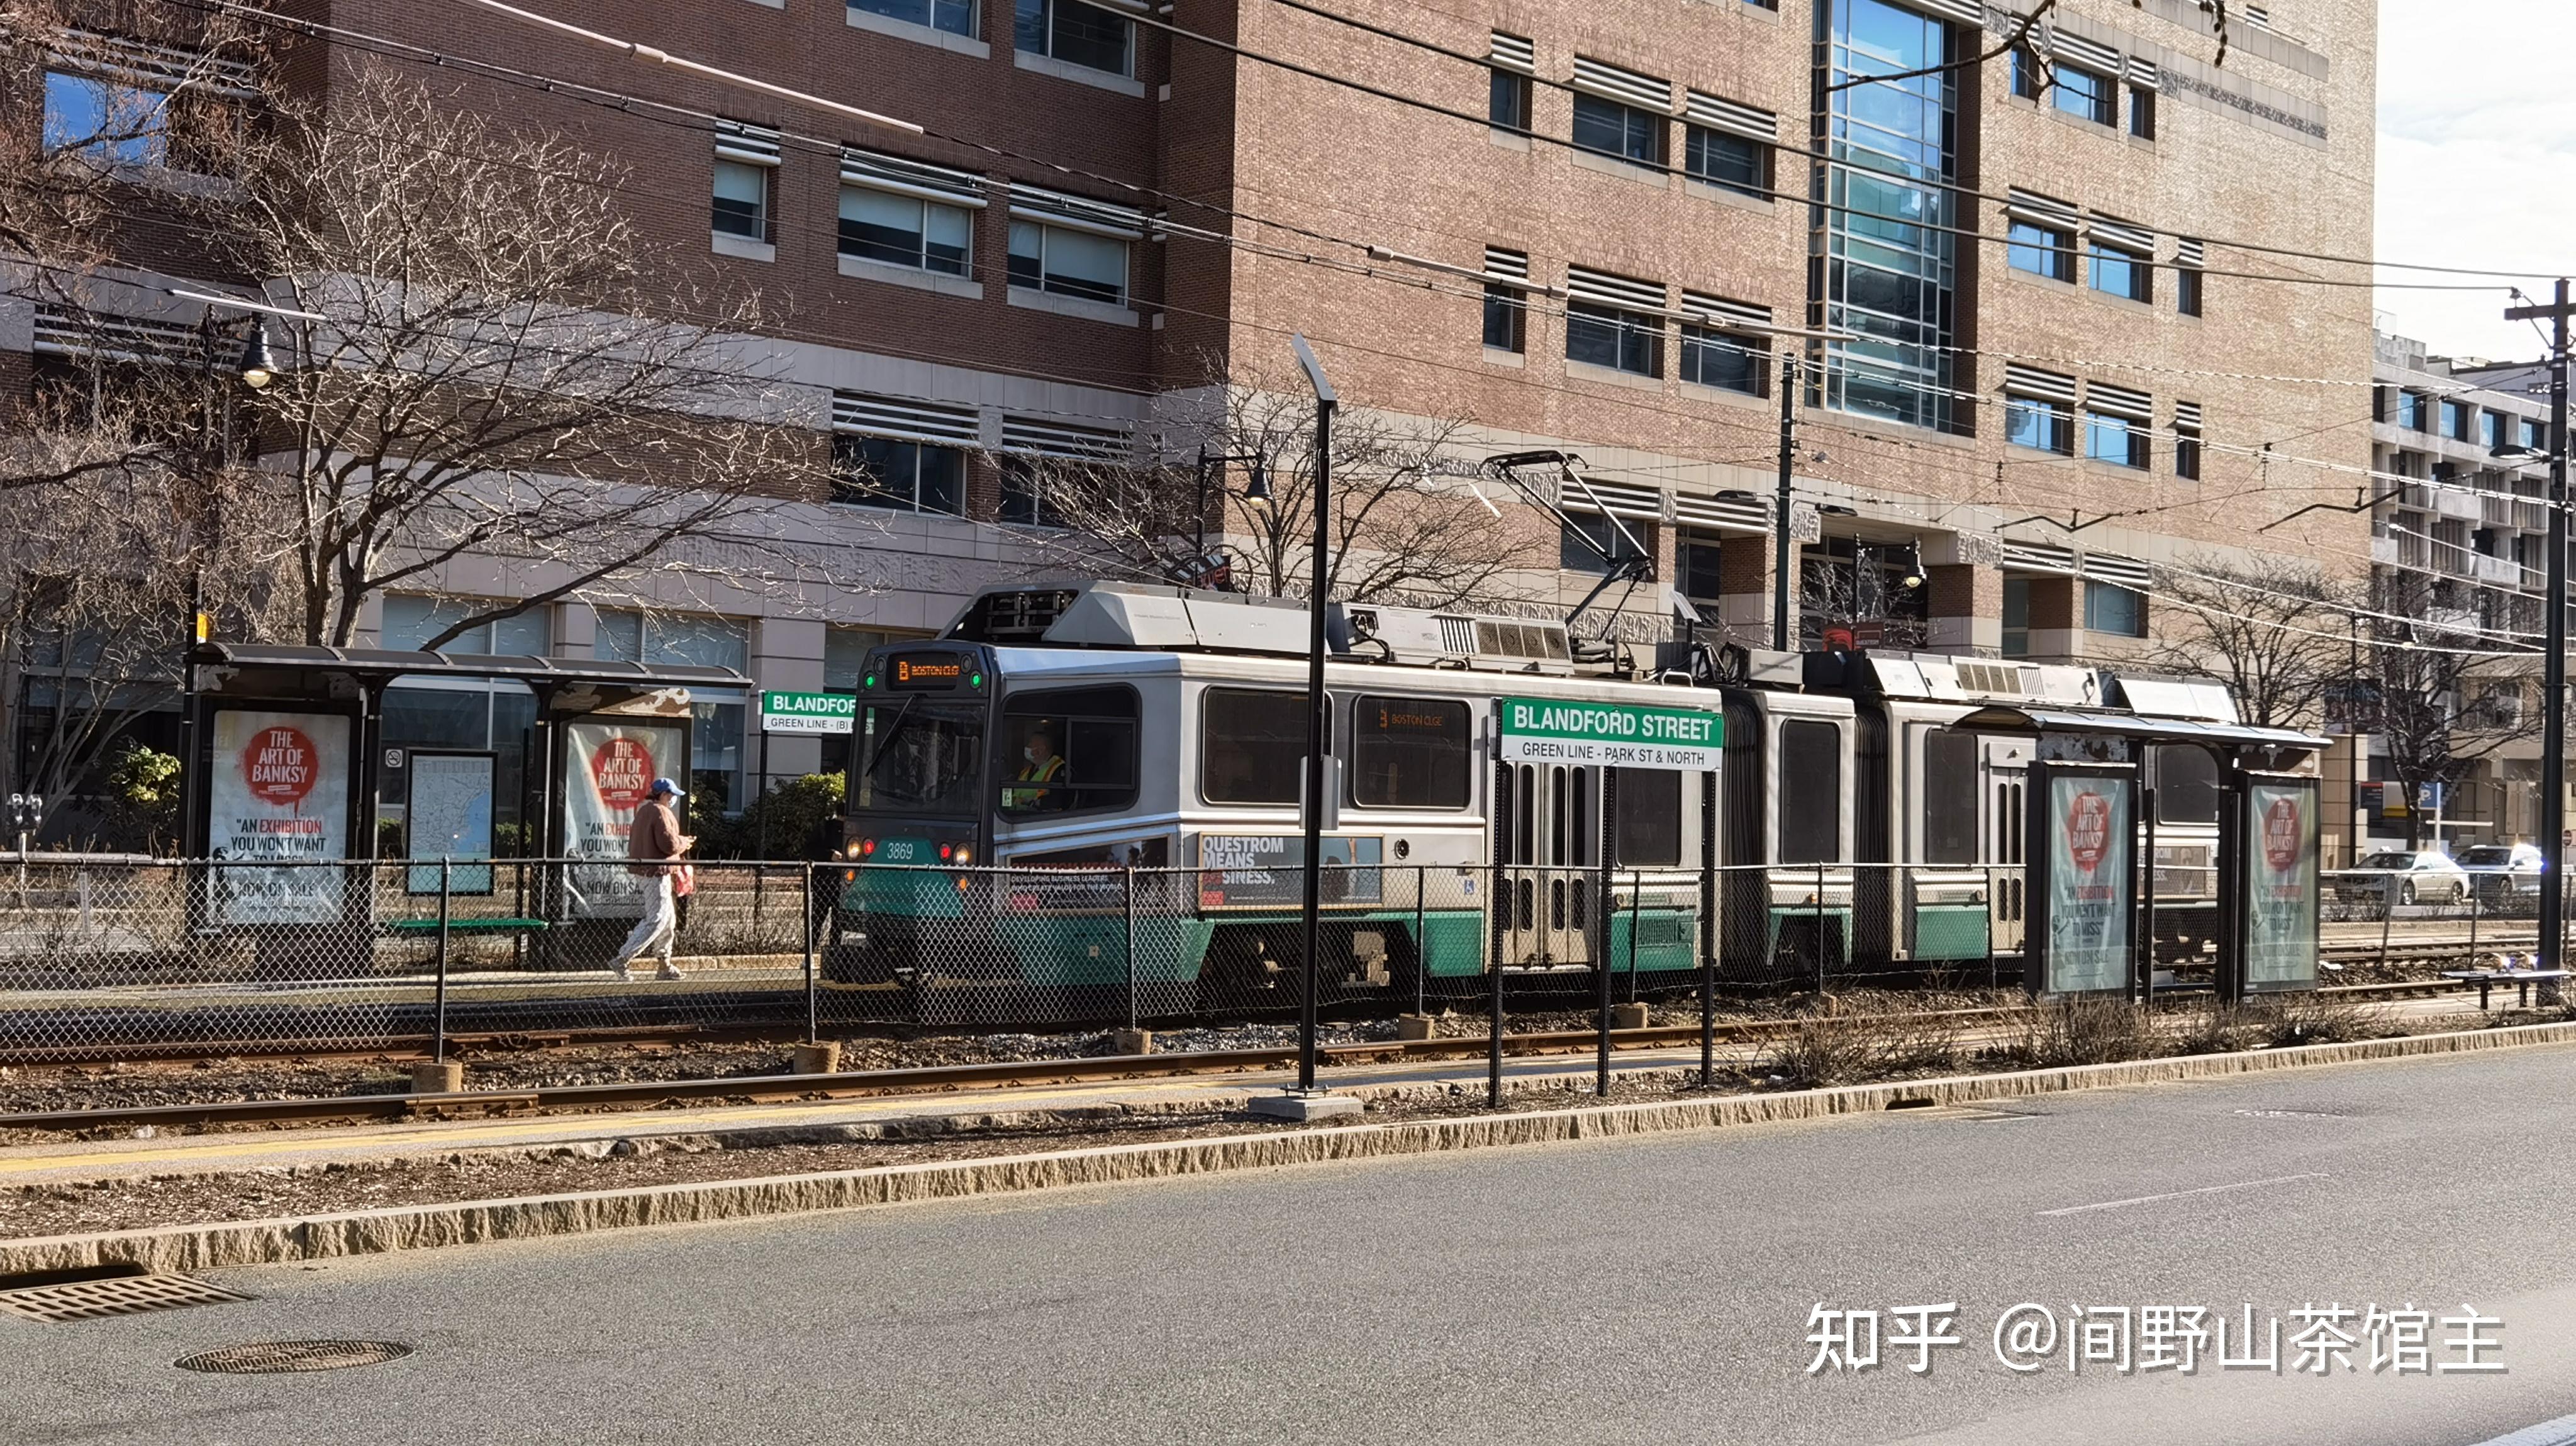 波士顿绿线——以地铁模式运营的有轨电车